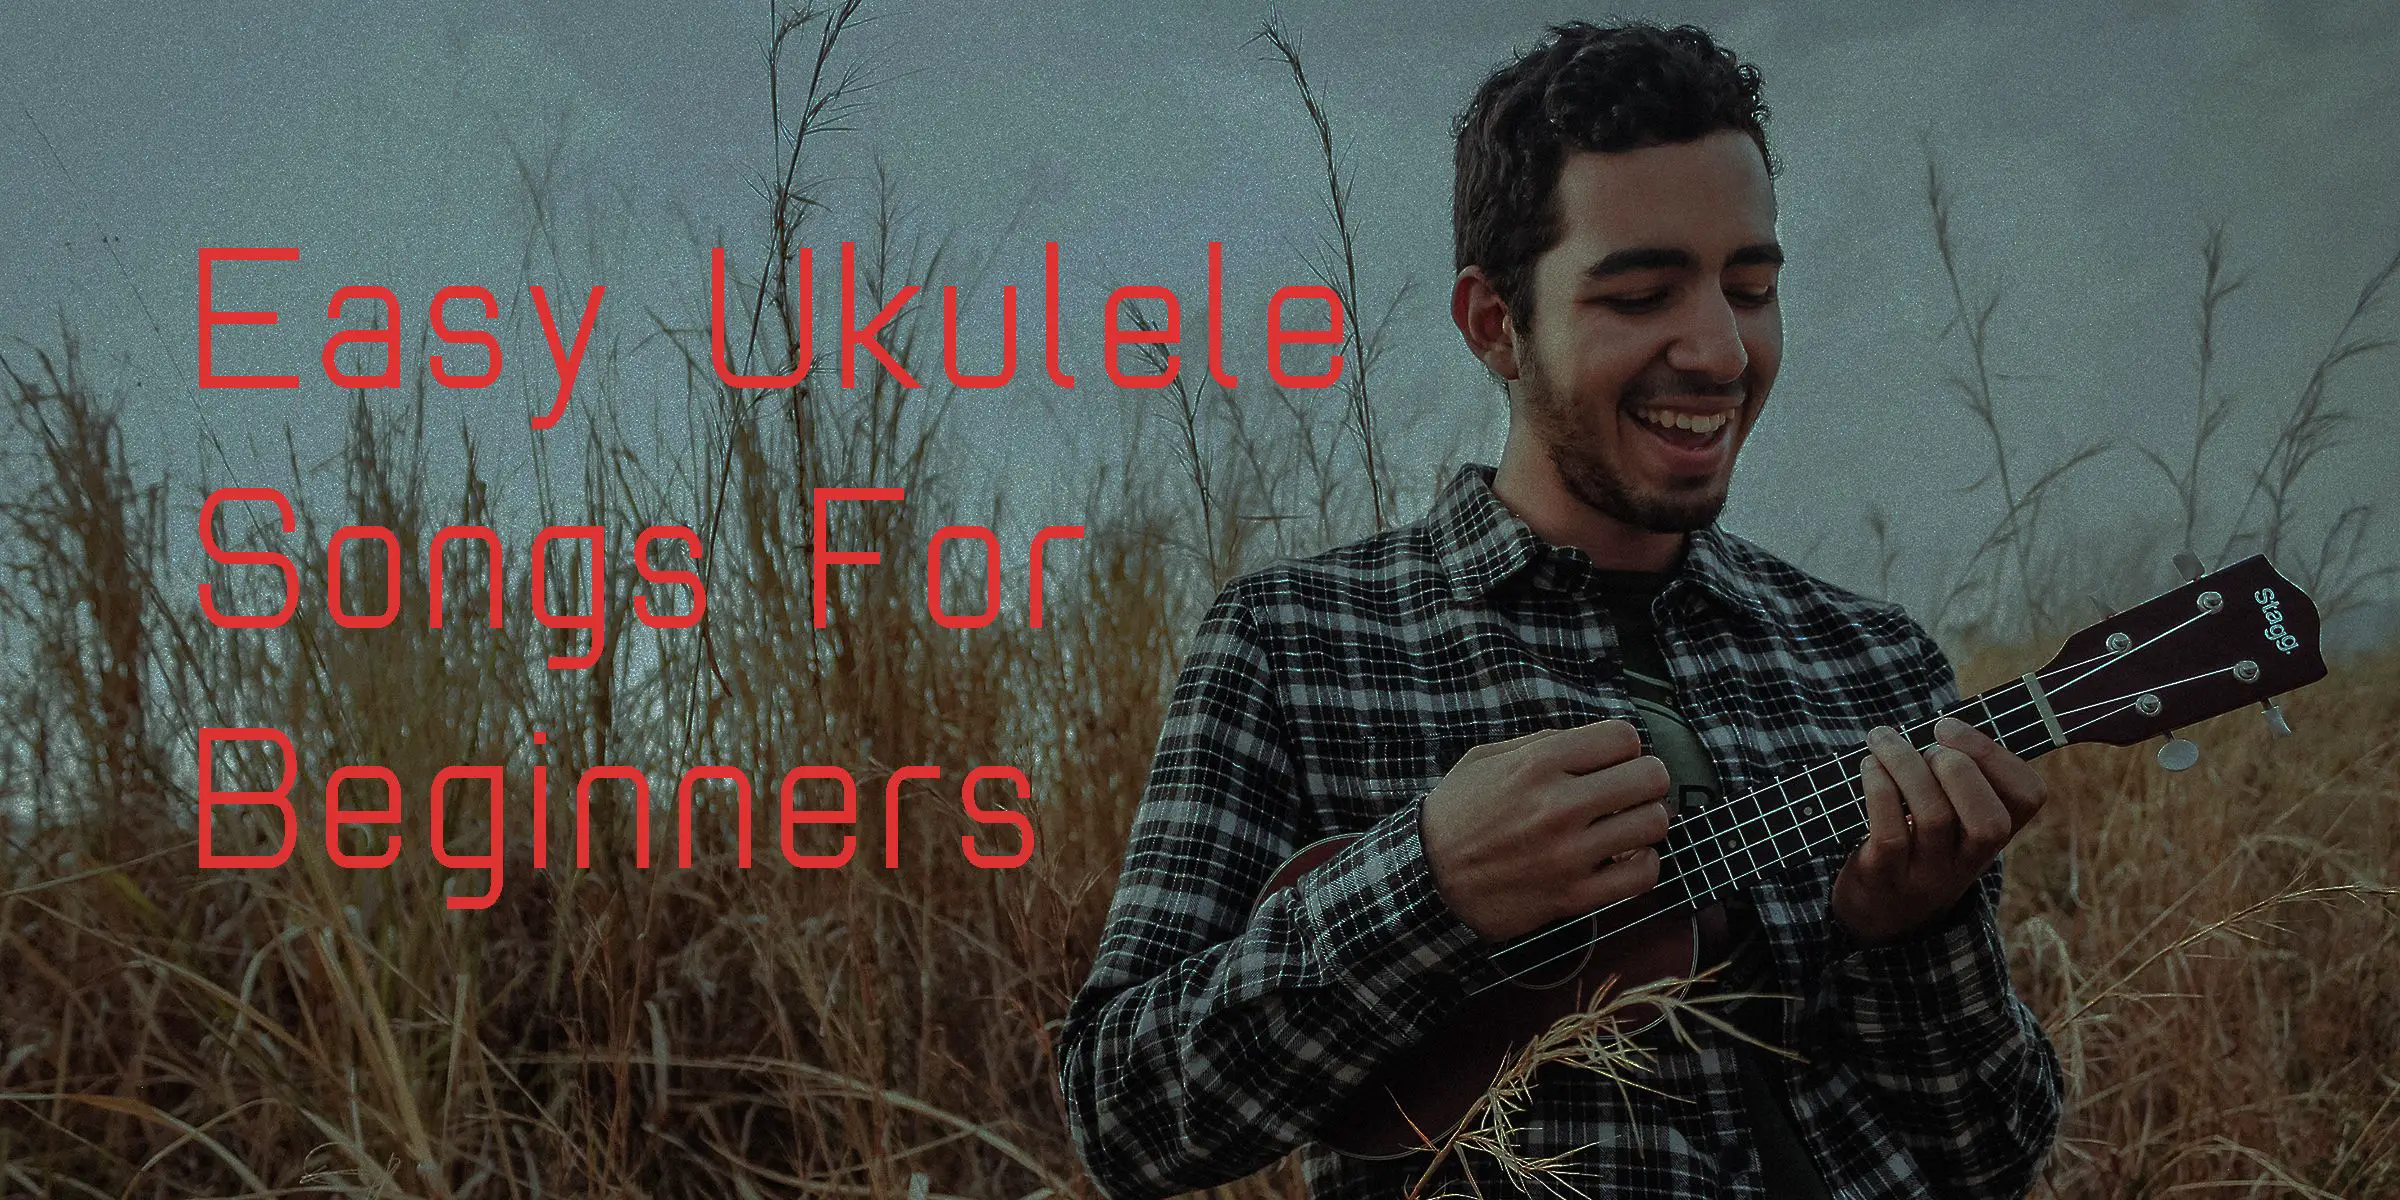 Somewhere Only We Know - Ukulele  Ukulele songs, Ukulele chords songs,  Ukulele songs beginner